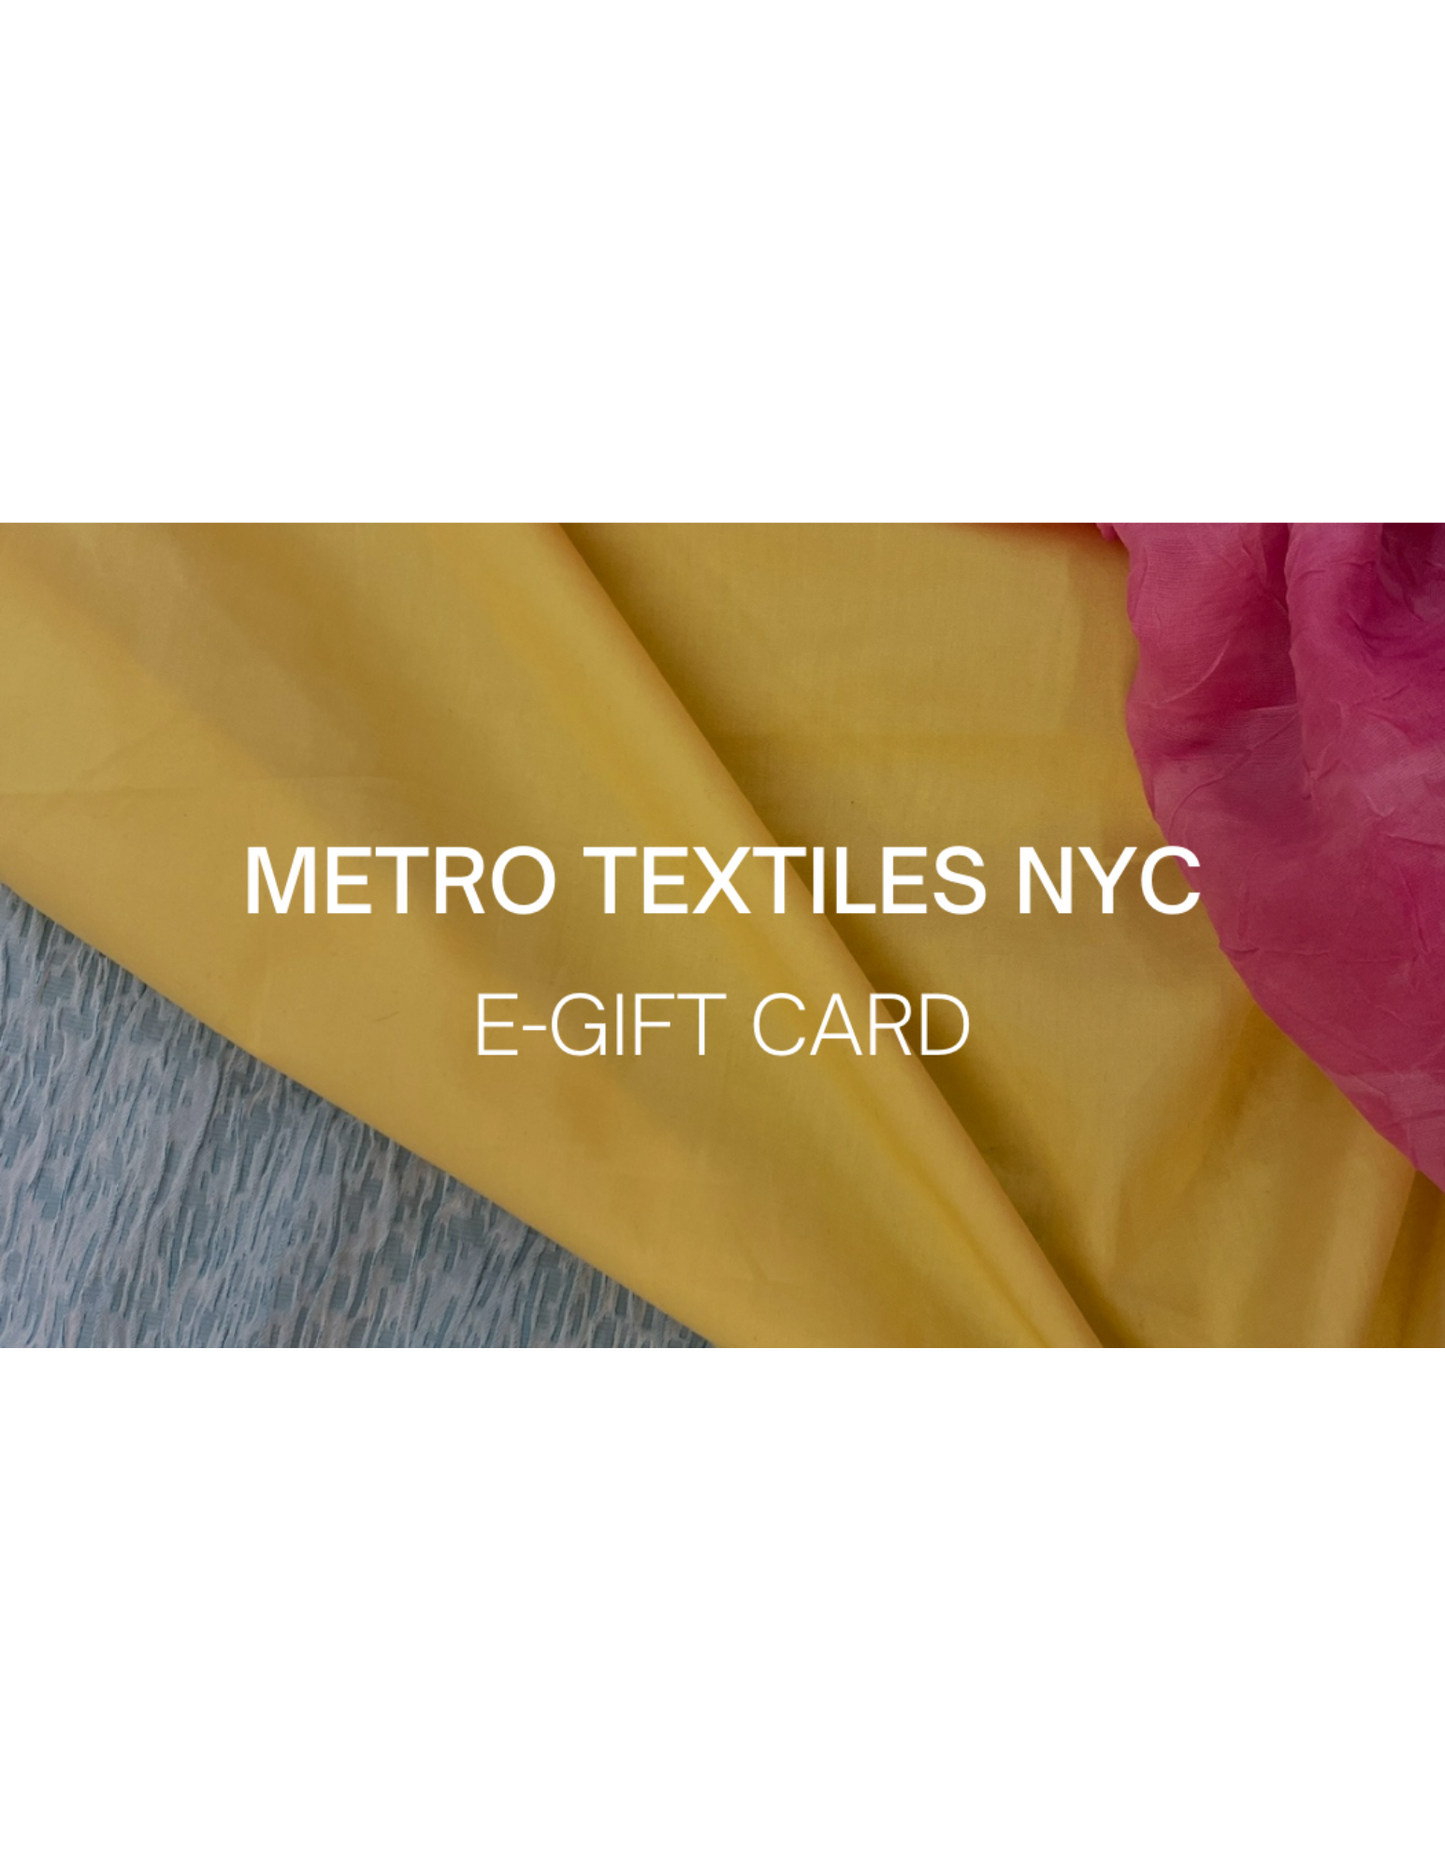 Metro Textiles NYC E-GIFT CARD